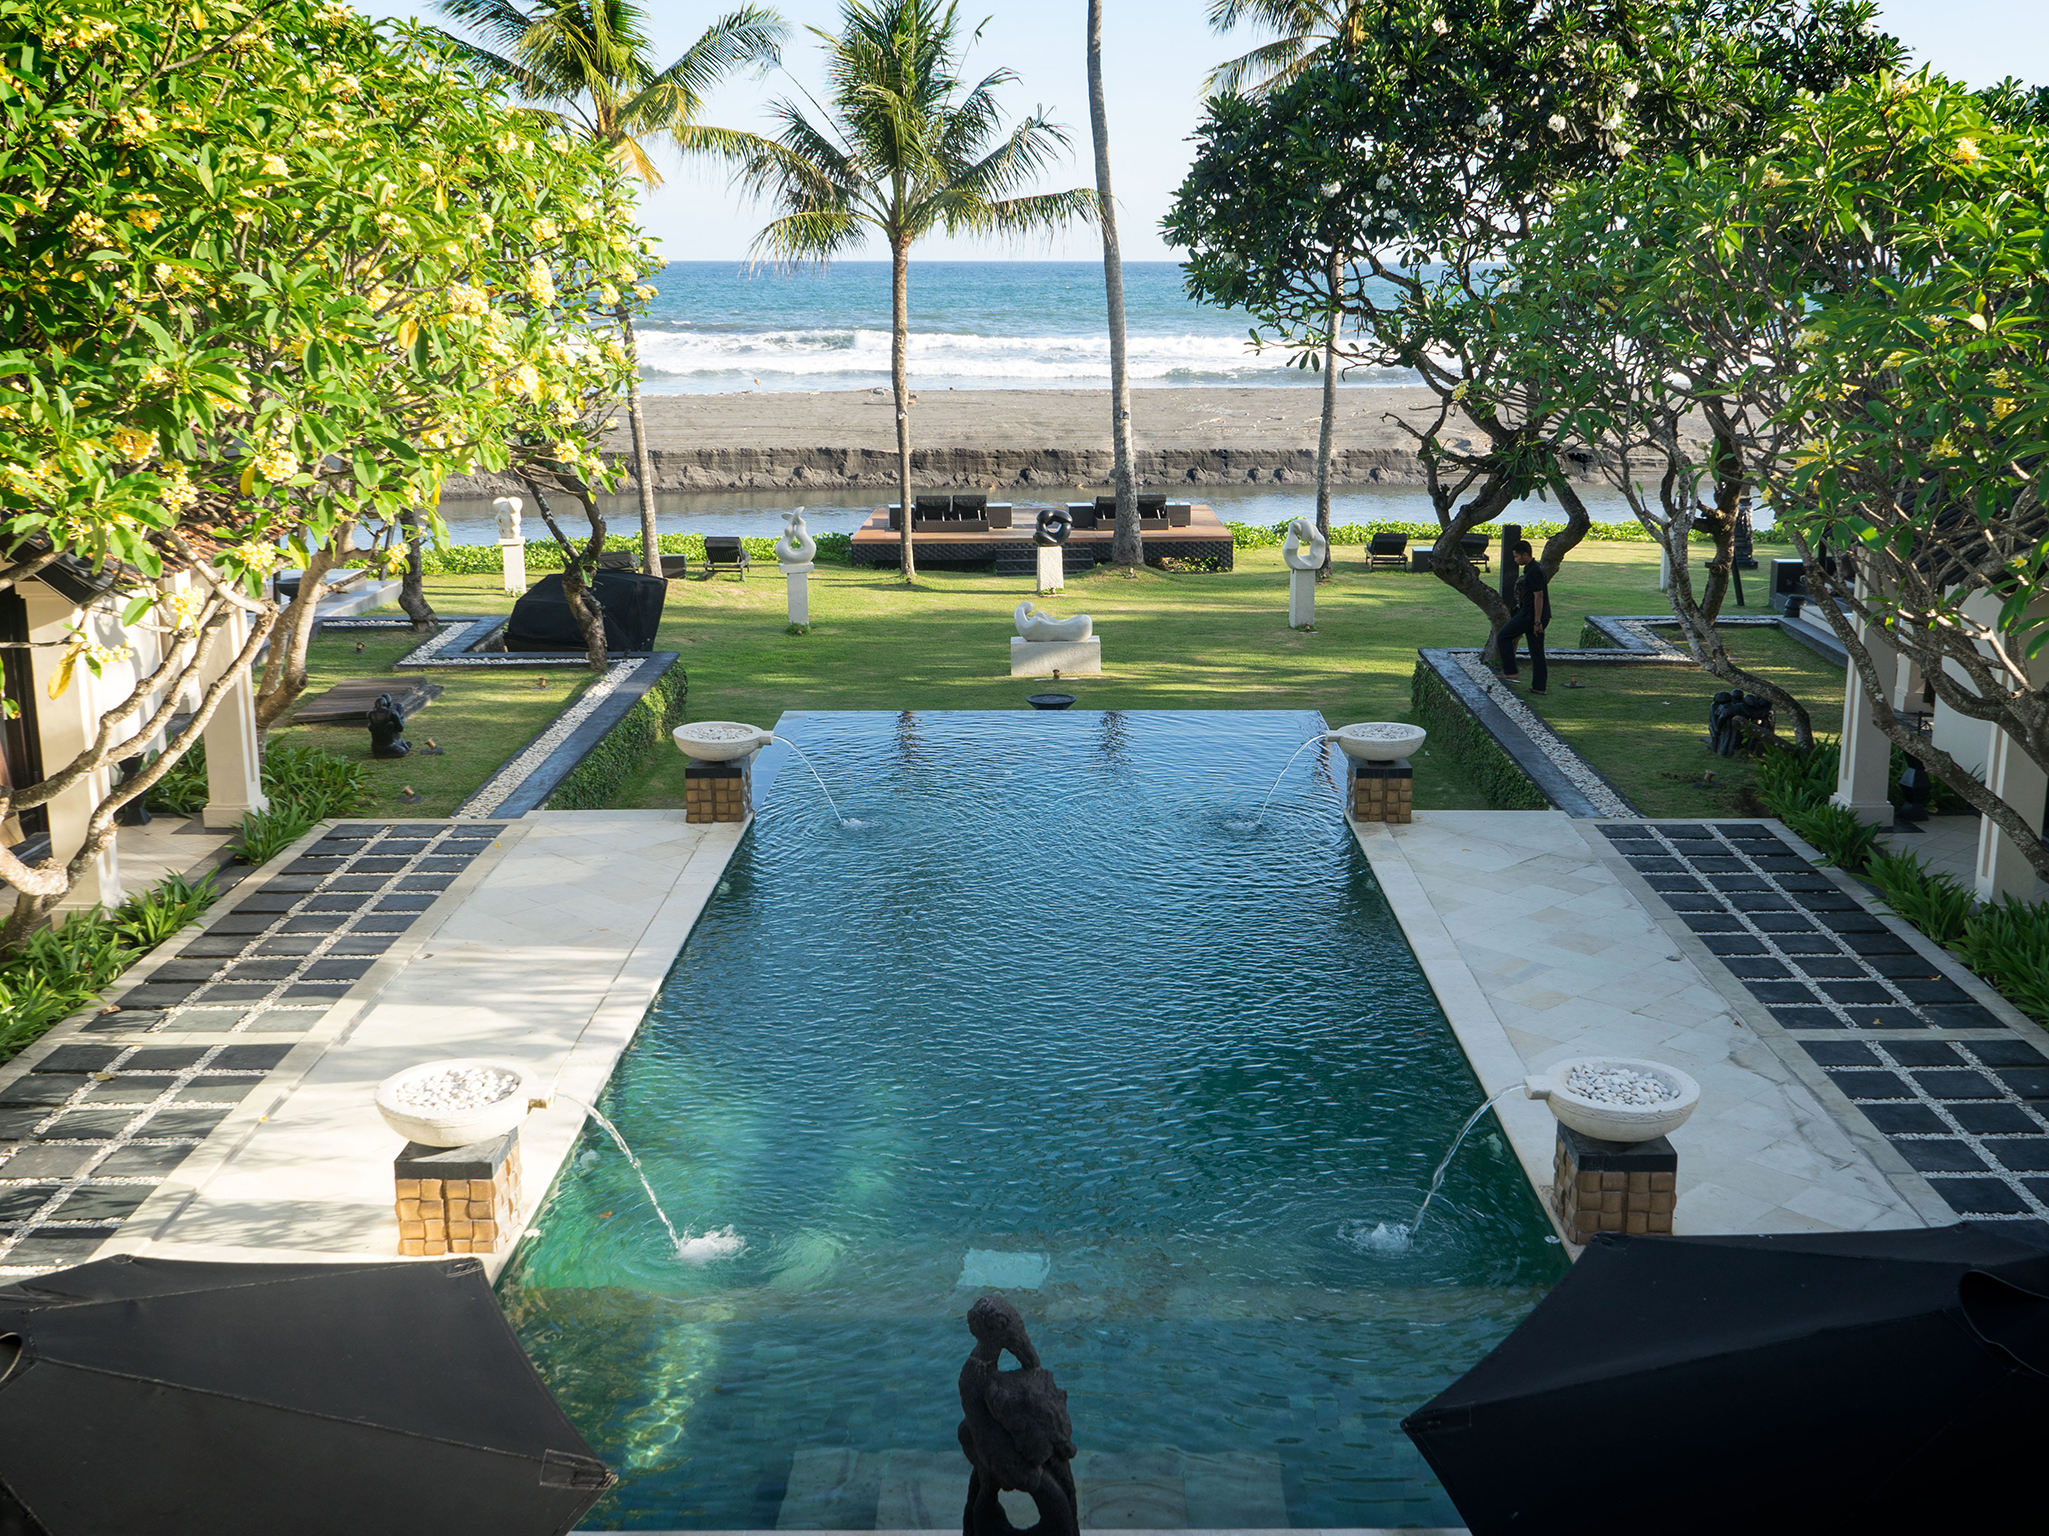 The Ylang Ylang - Topview of pool - The Ylang Ylang, Ketewel, Bali